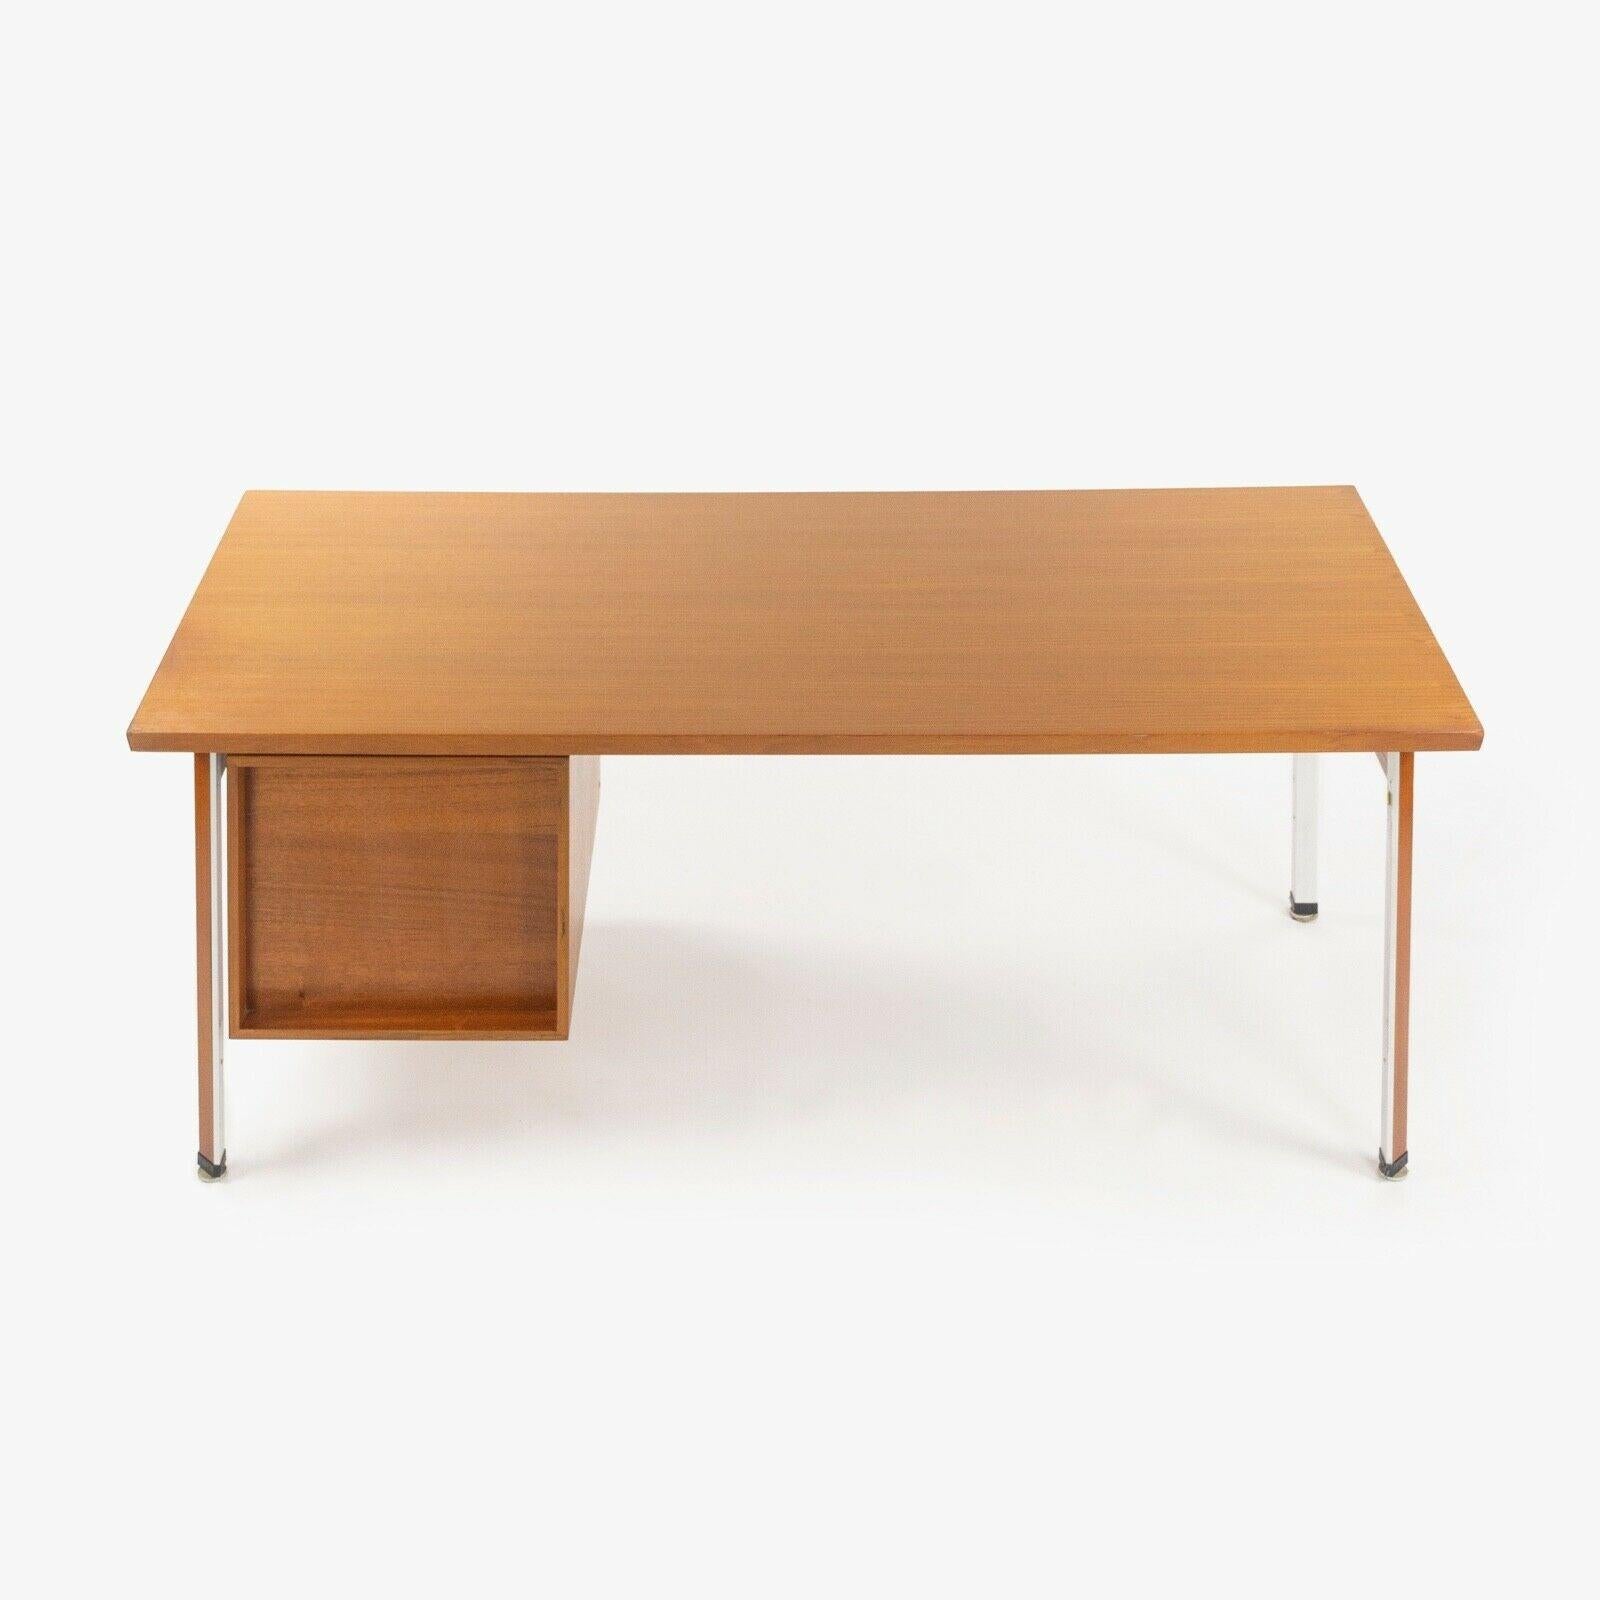 1960s Finn Juhl France & Son Technocrat Desk Model 963 in Teak Made in Denmark For Sale 4